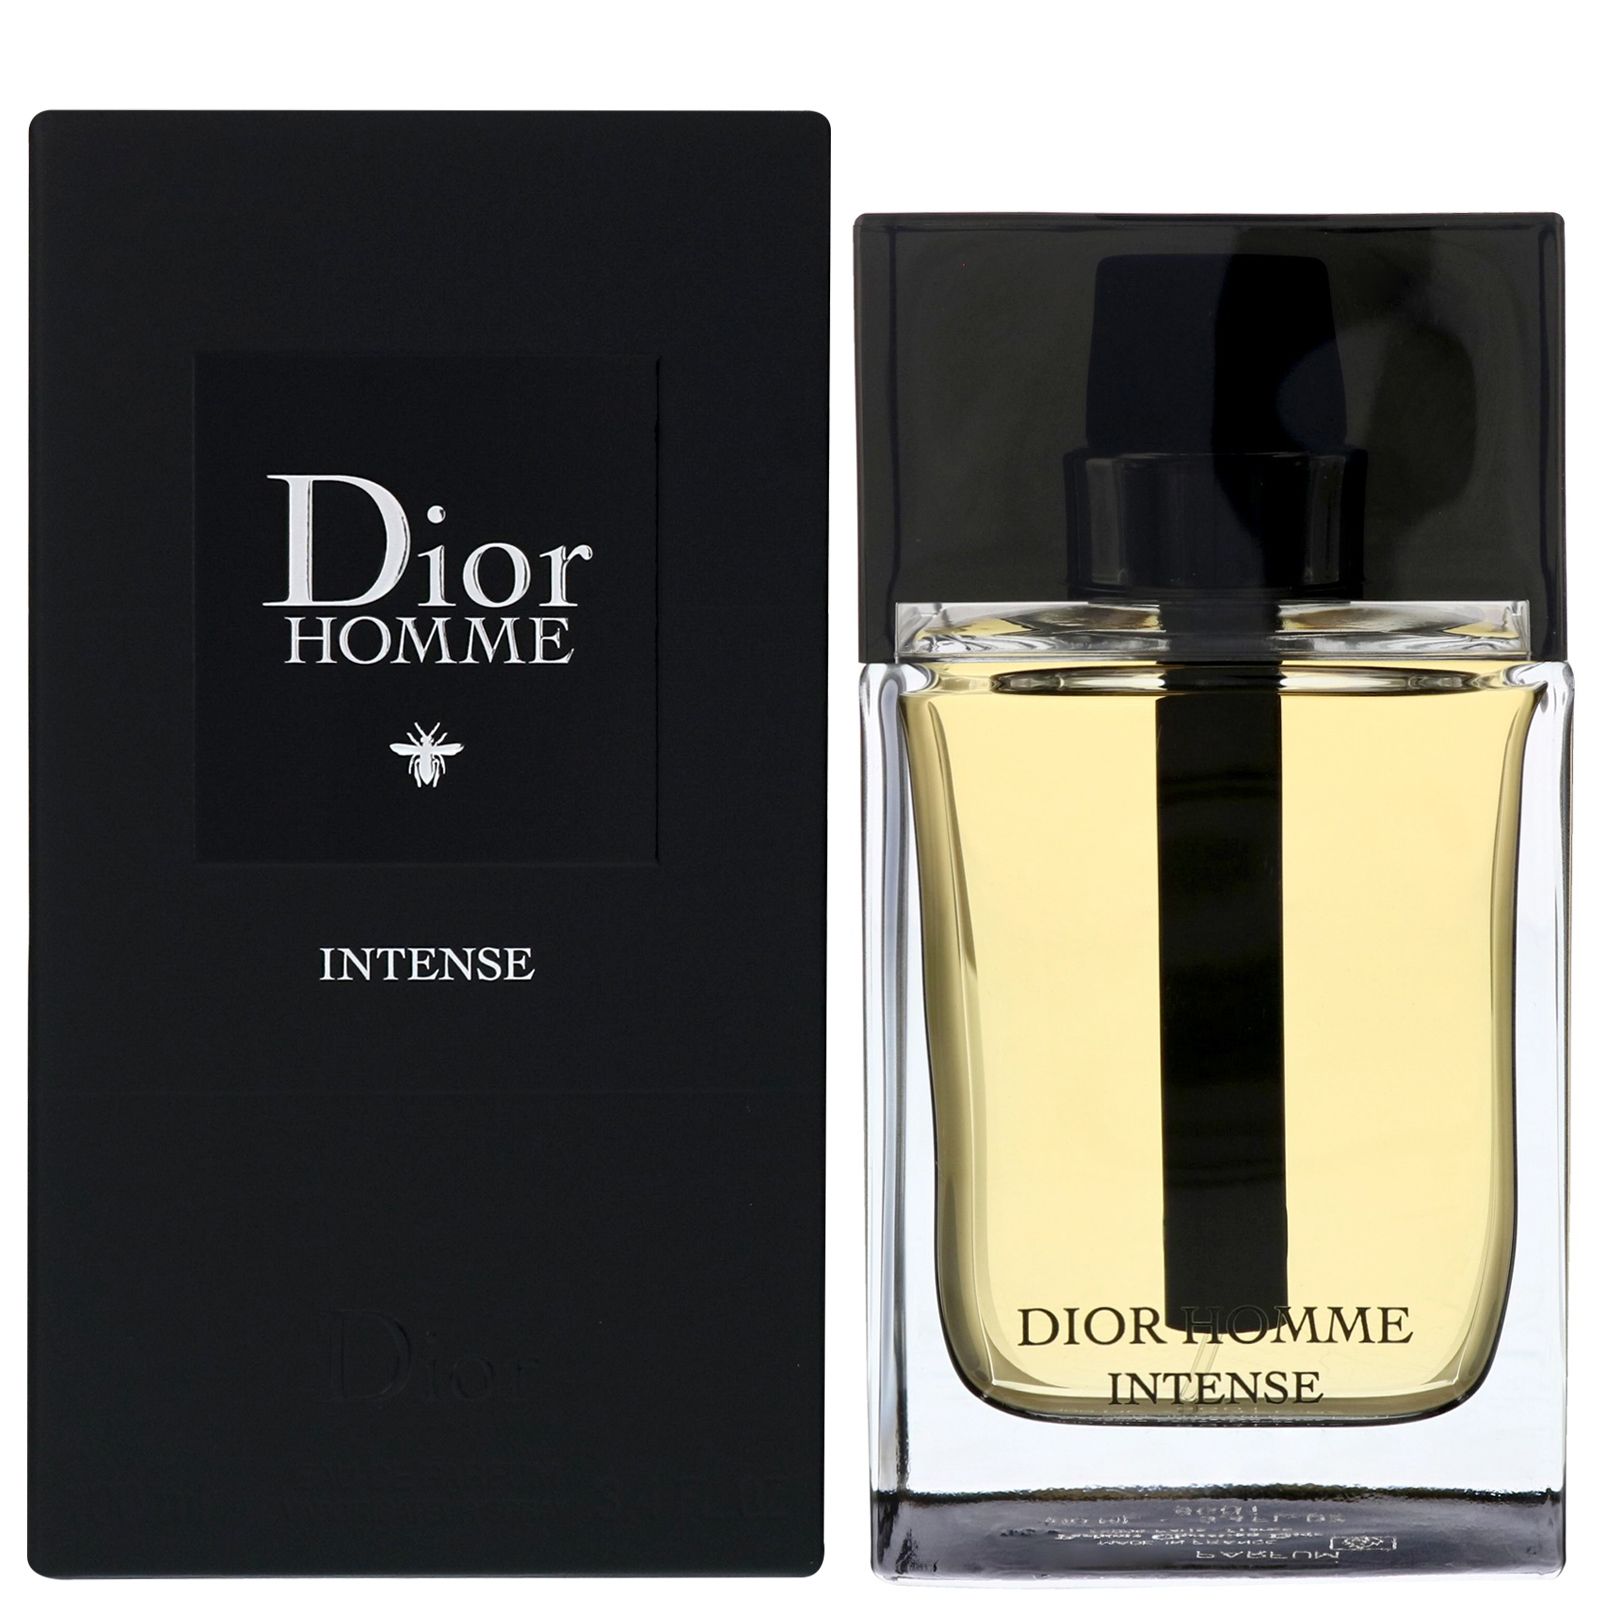 Homme intense мужские. Christian Dior Dior homme intense. Dior homme intense EDP 100ml. Dior homme intense 2011. CD Dior homme intense EDP.